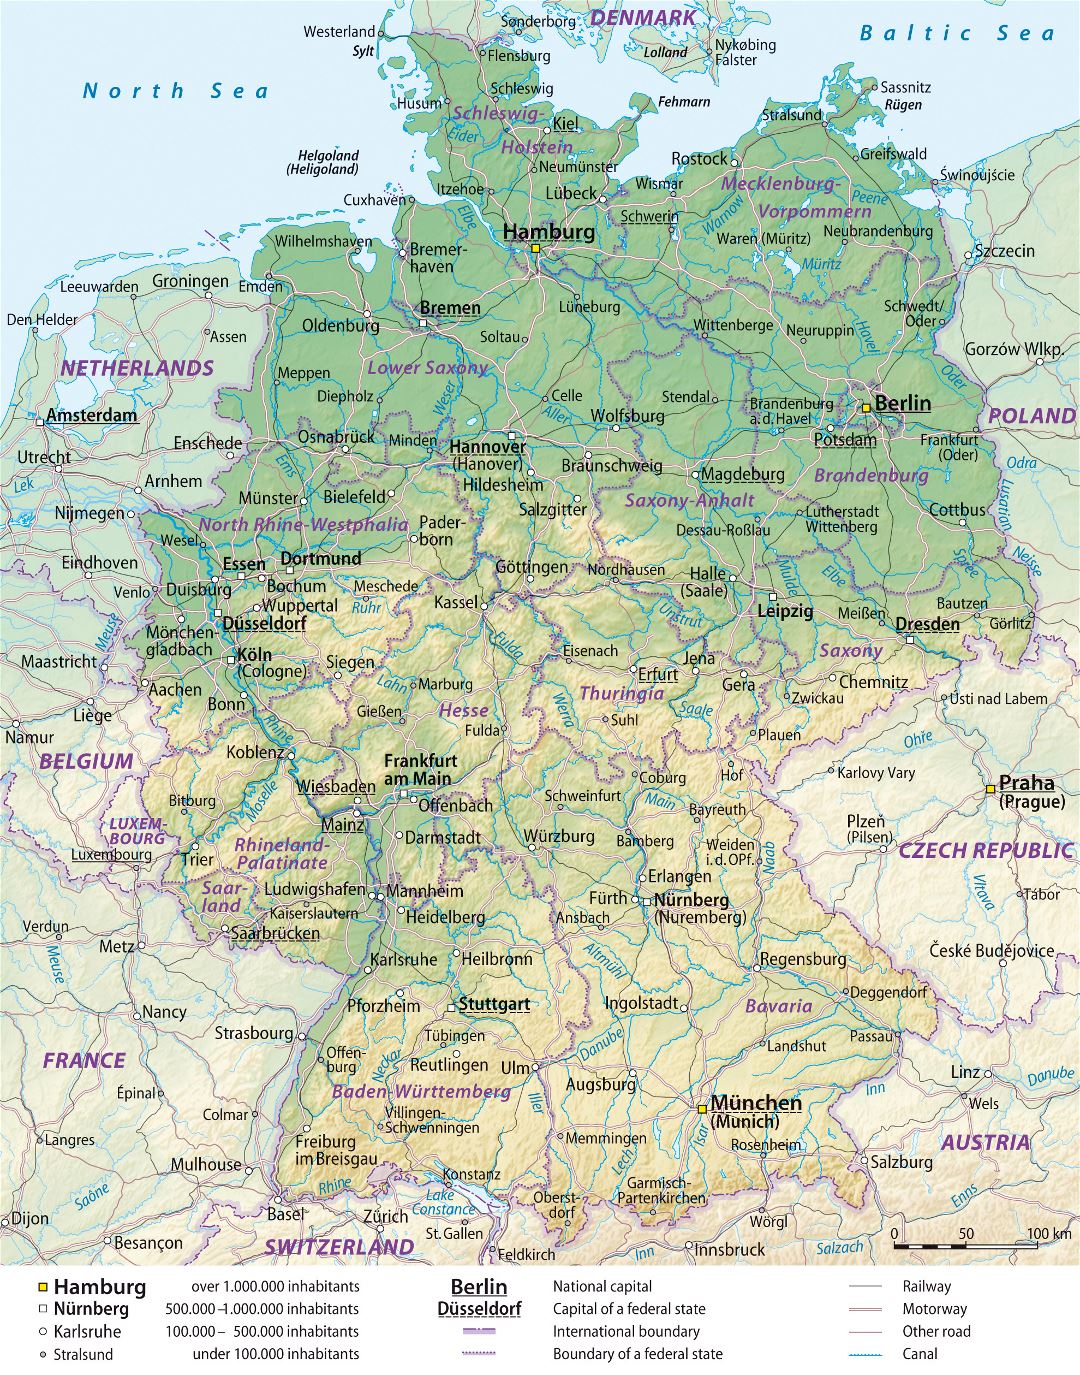 Большая детальная карта высот Германии с административными делениями, дорогами и городами